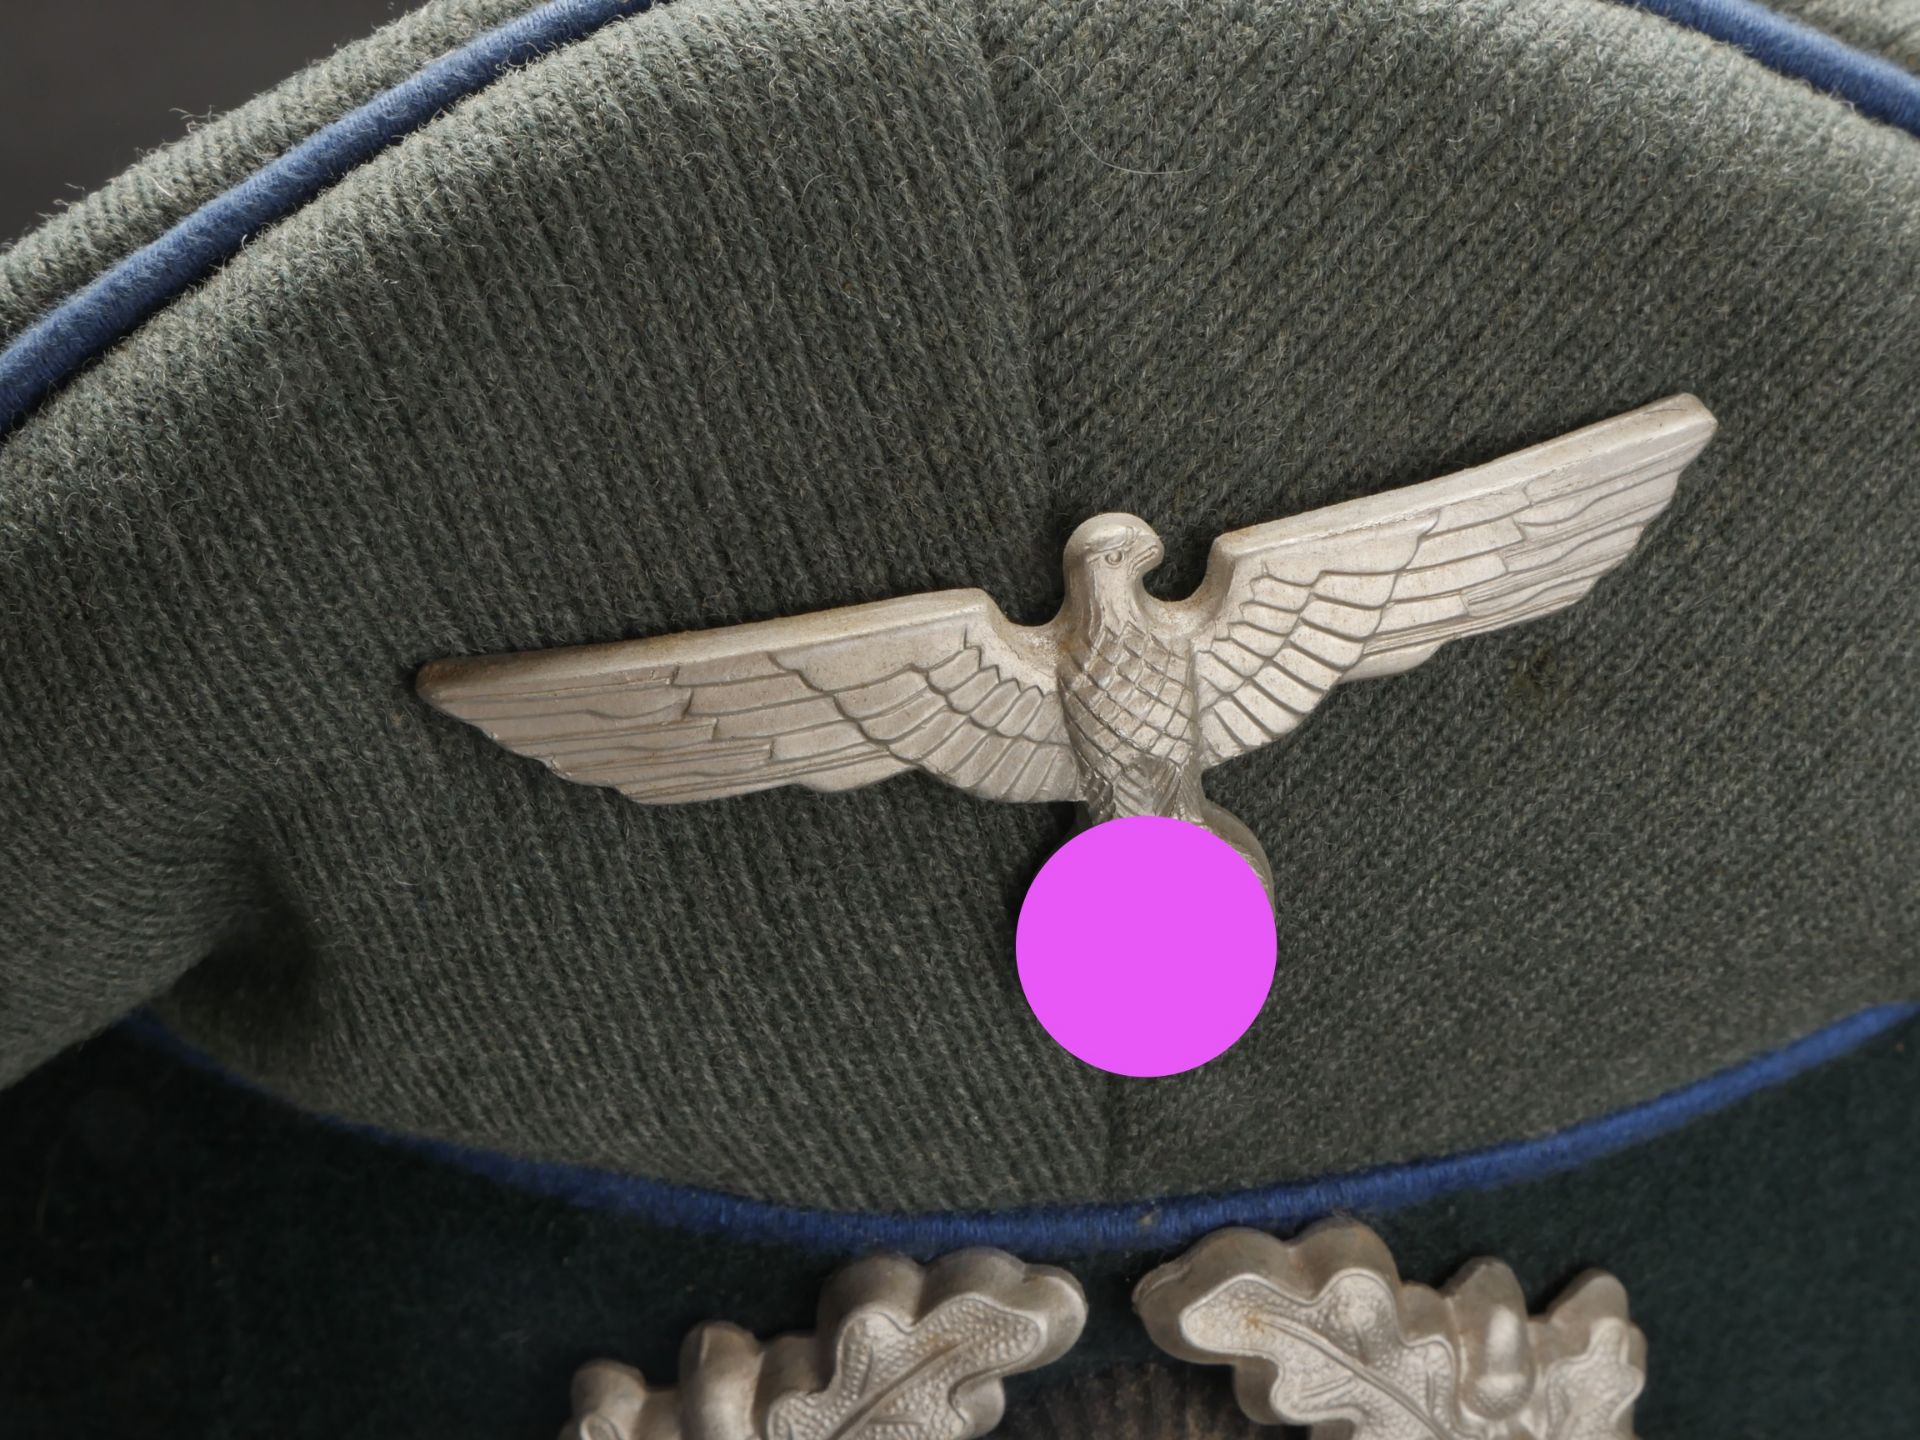 Casquette officier medecin. German officer cap - Image 2 of 5